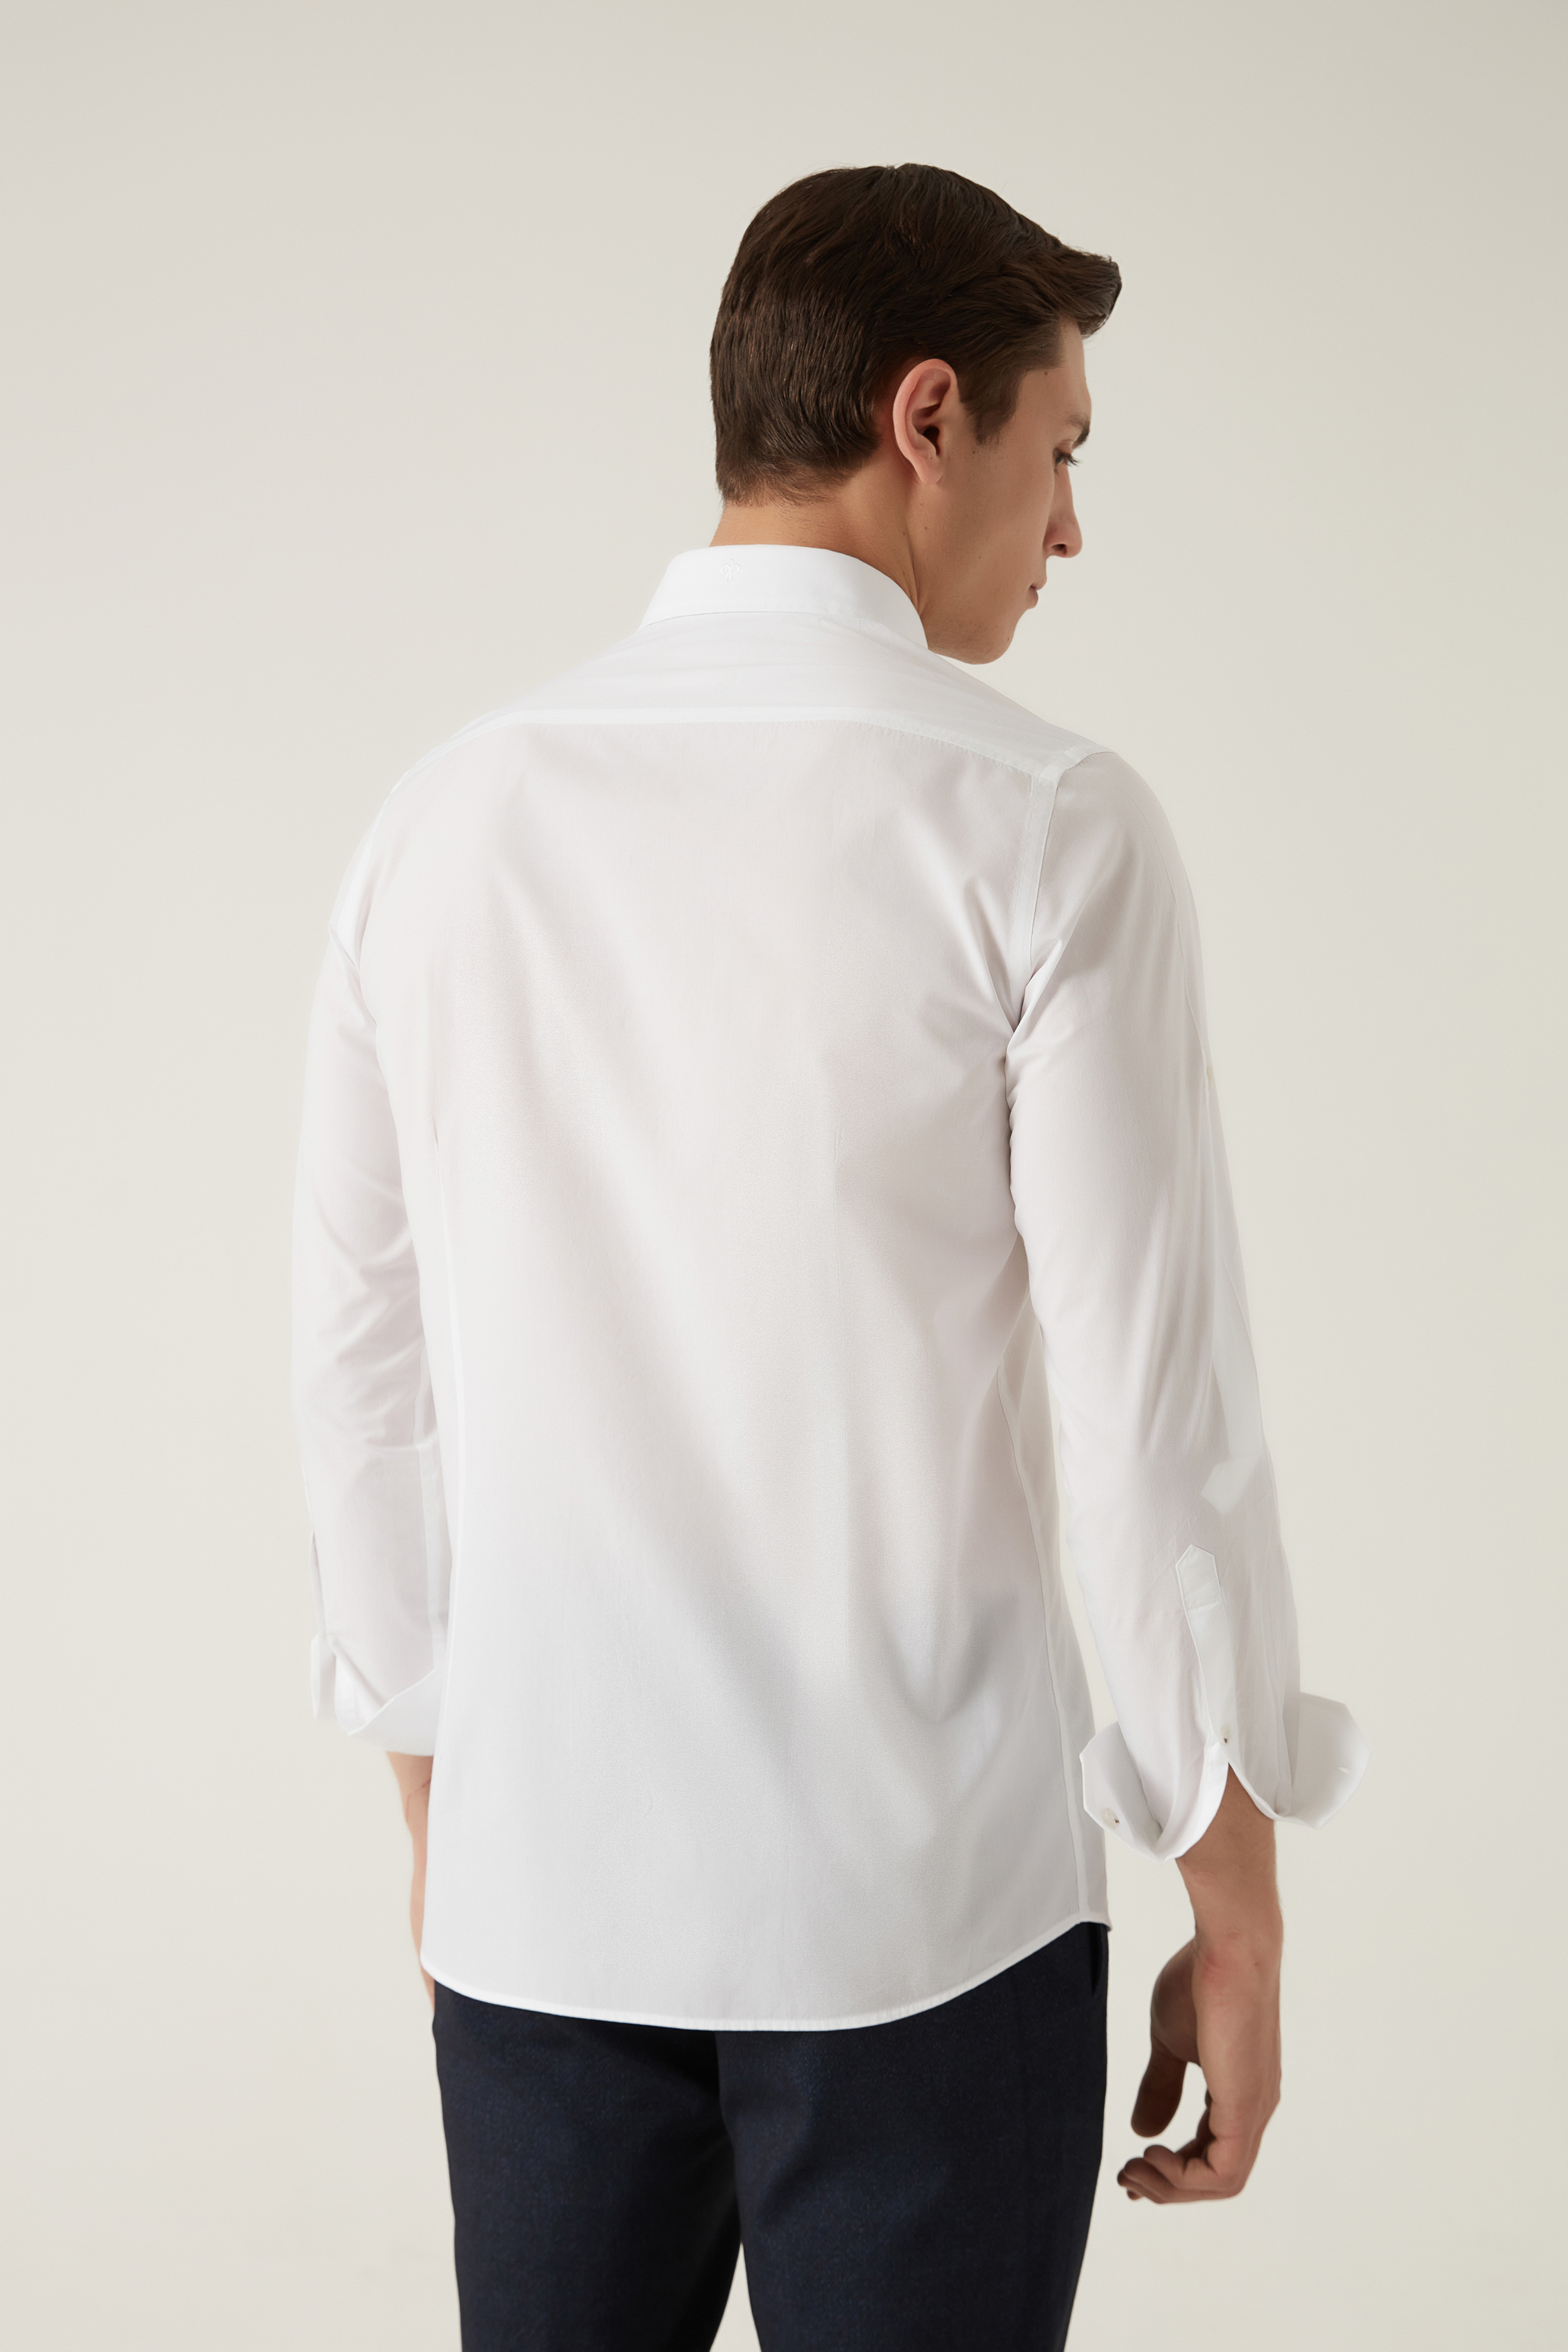 Damat Tween Damat Slim Fit Beyaz Düz Yaka İğneli Gömlek. 4